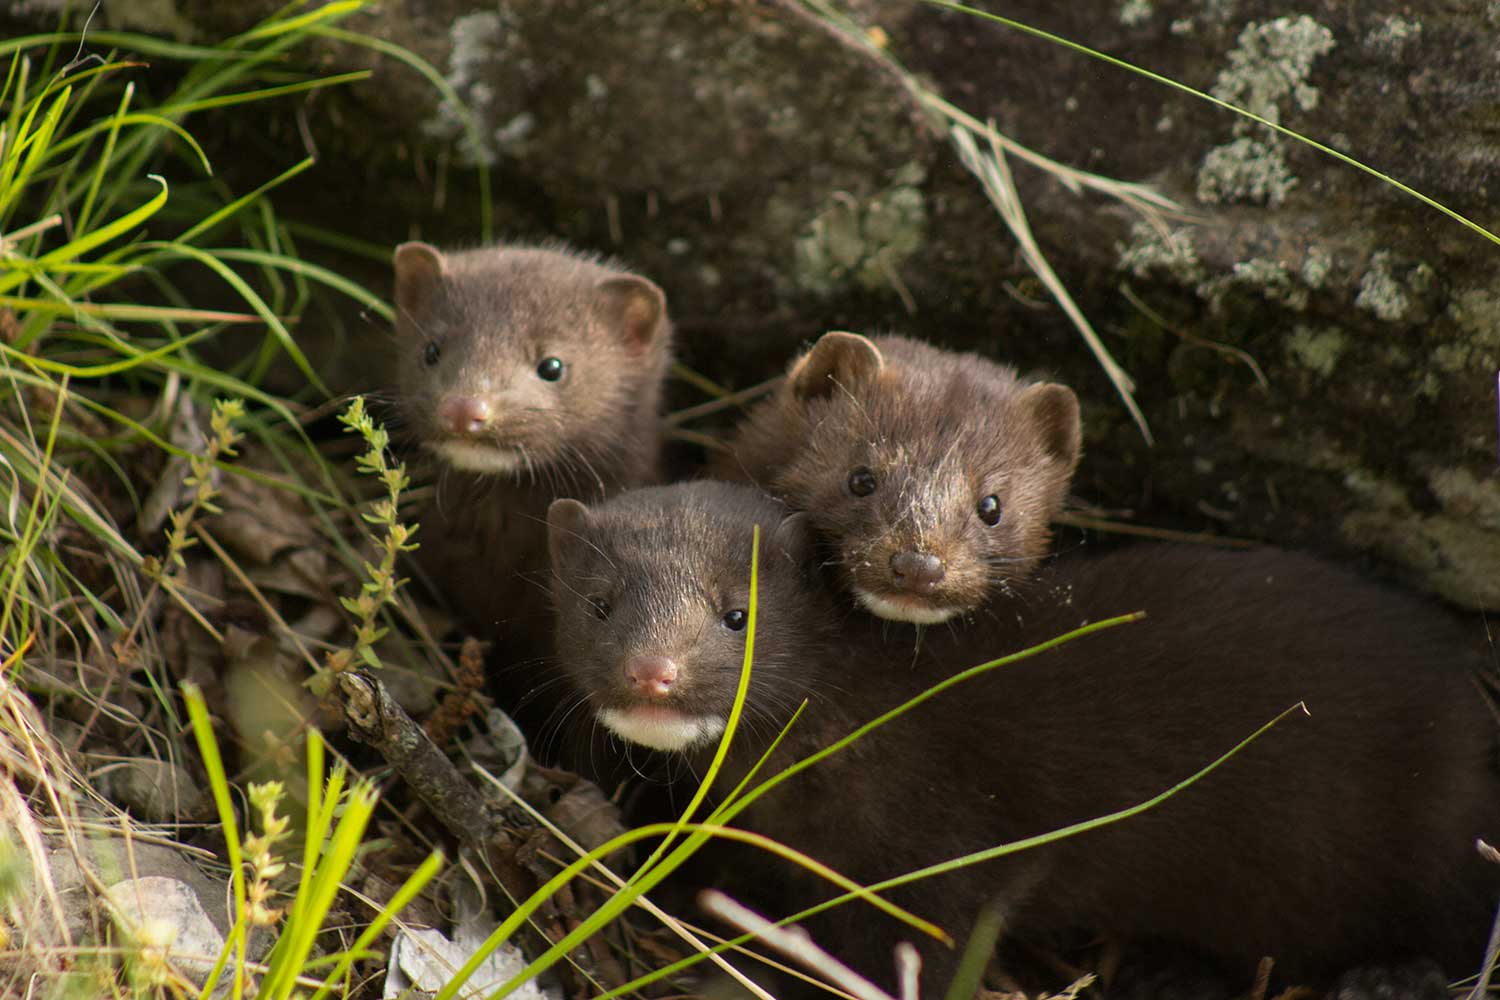 Three minks huddled together under a rock.